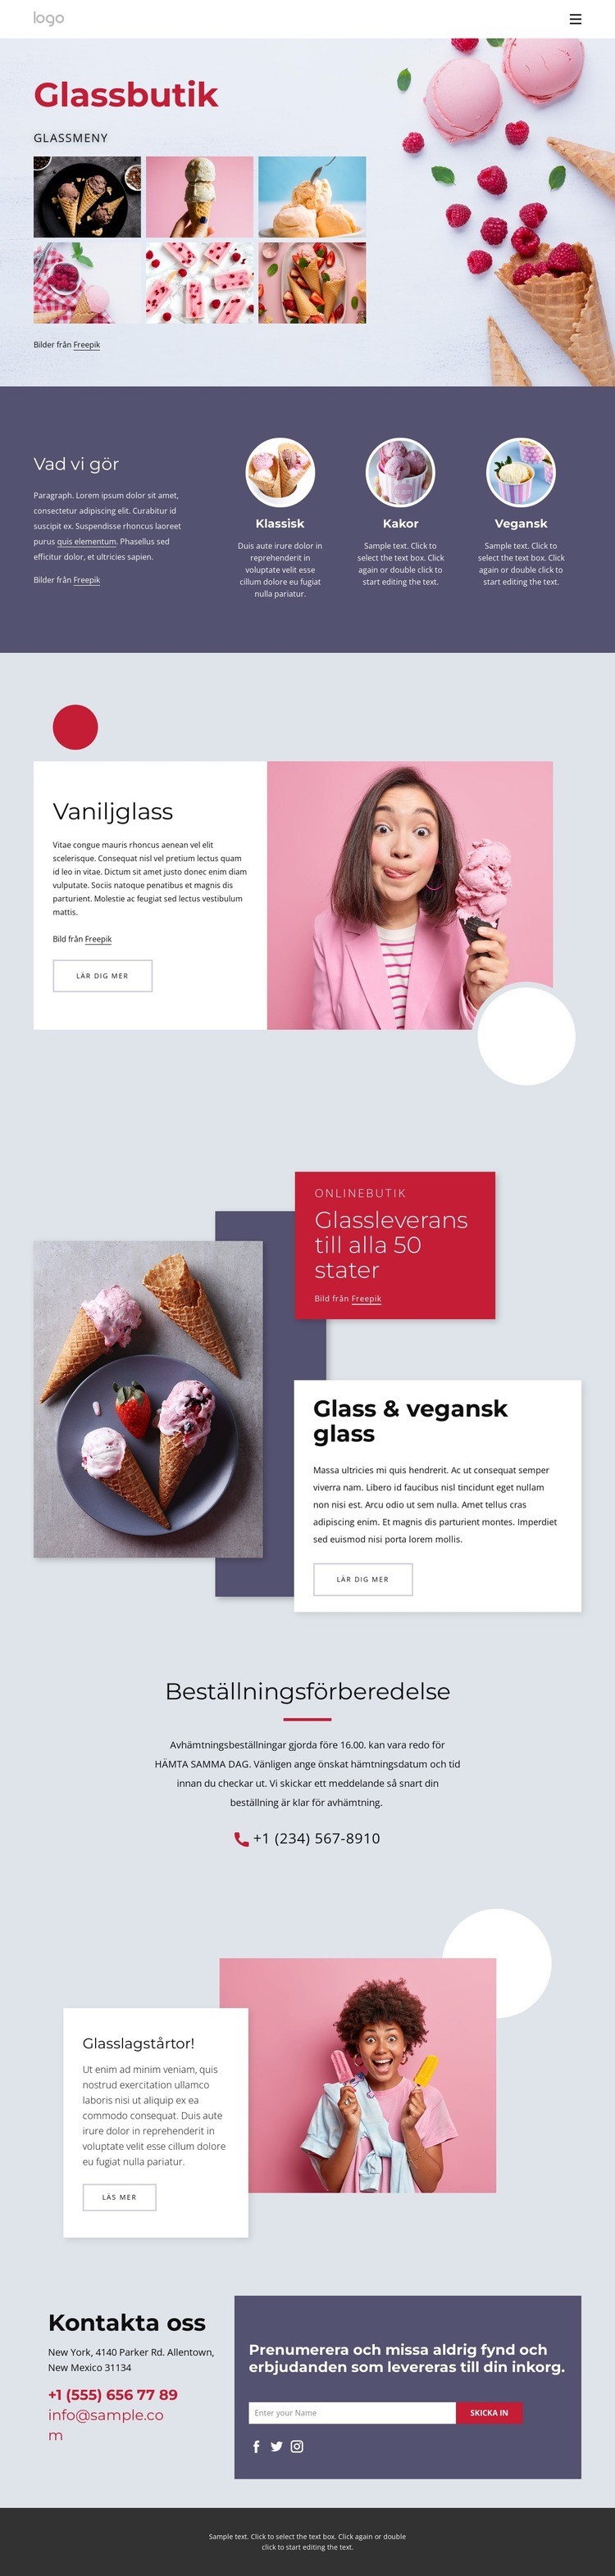 Beställ glass online Hemsidedesign